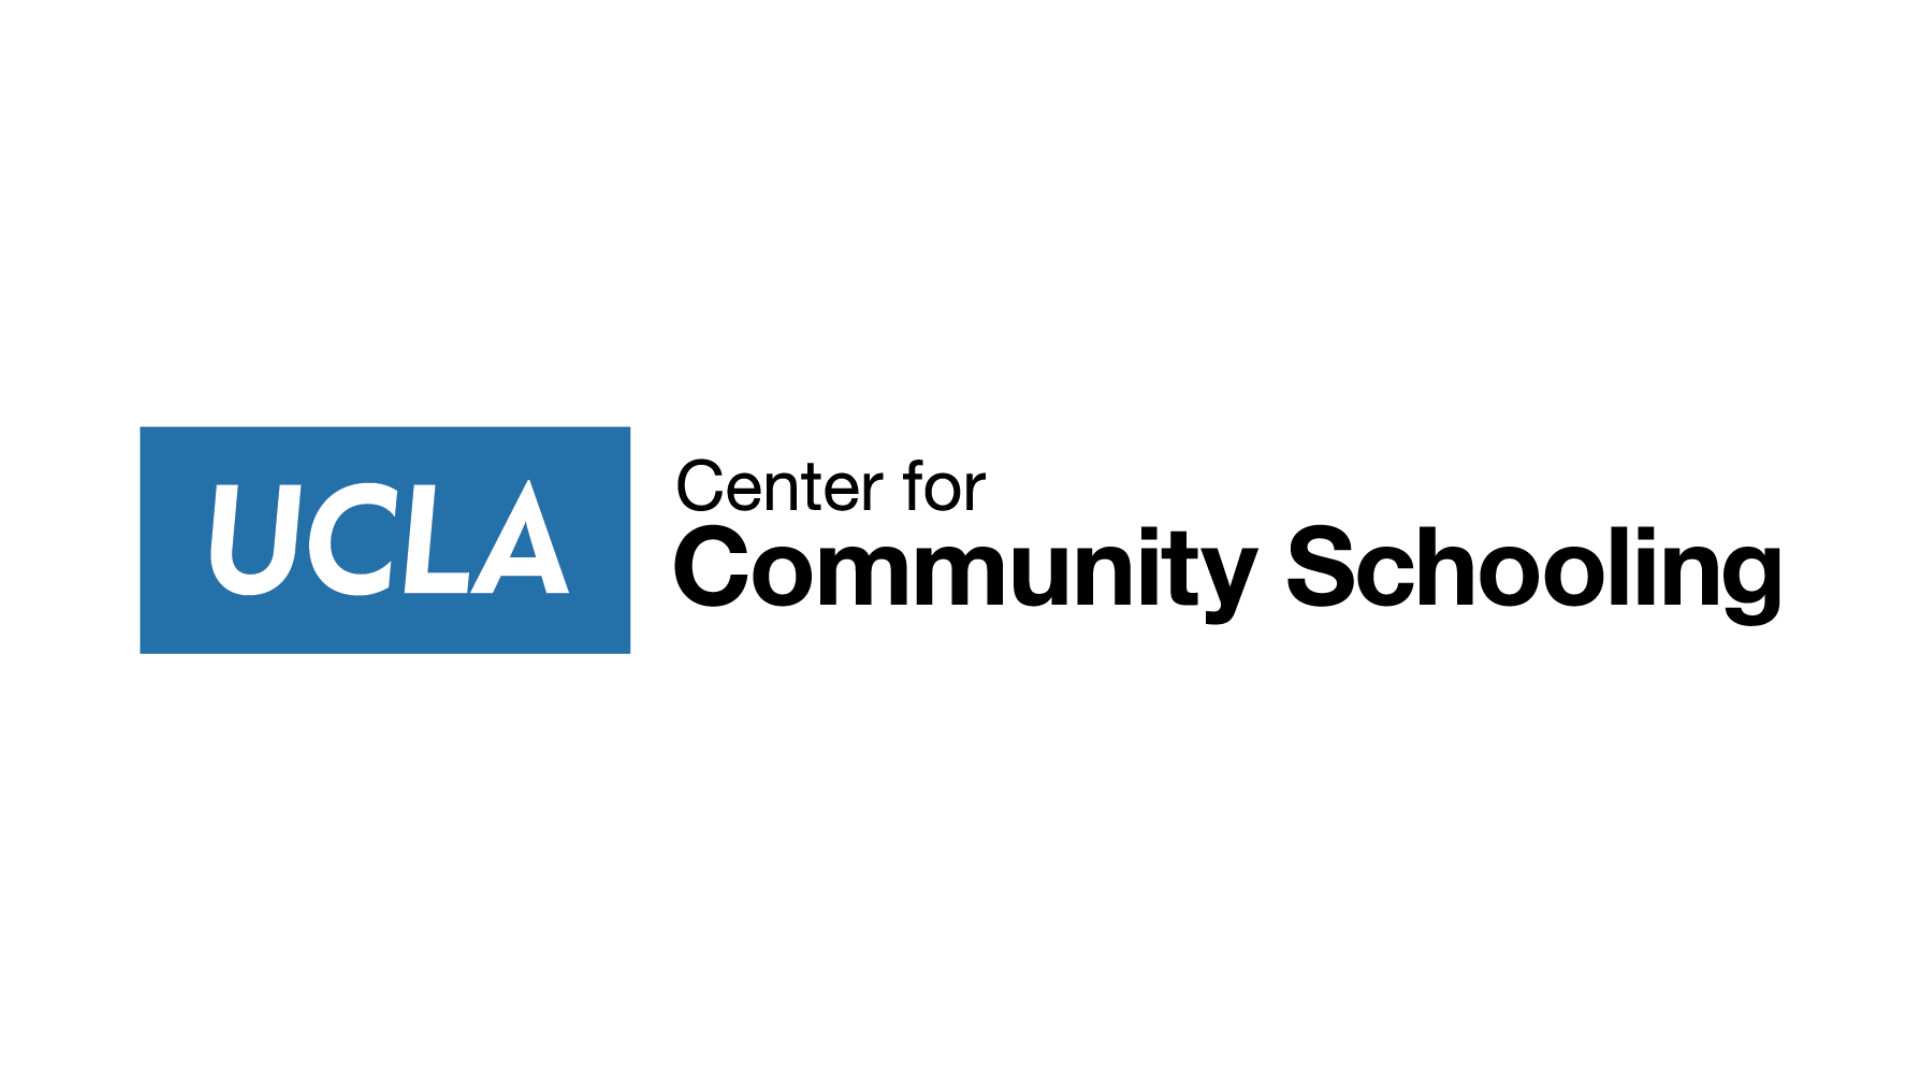 UCLA Center for Community Schooling logo